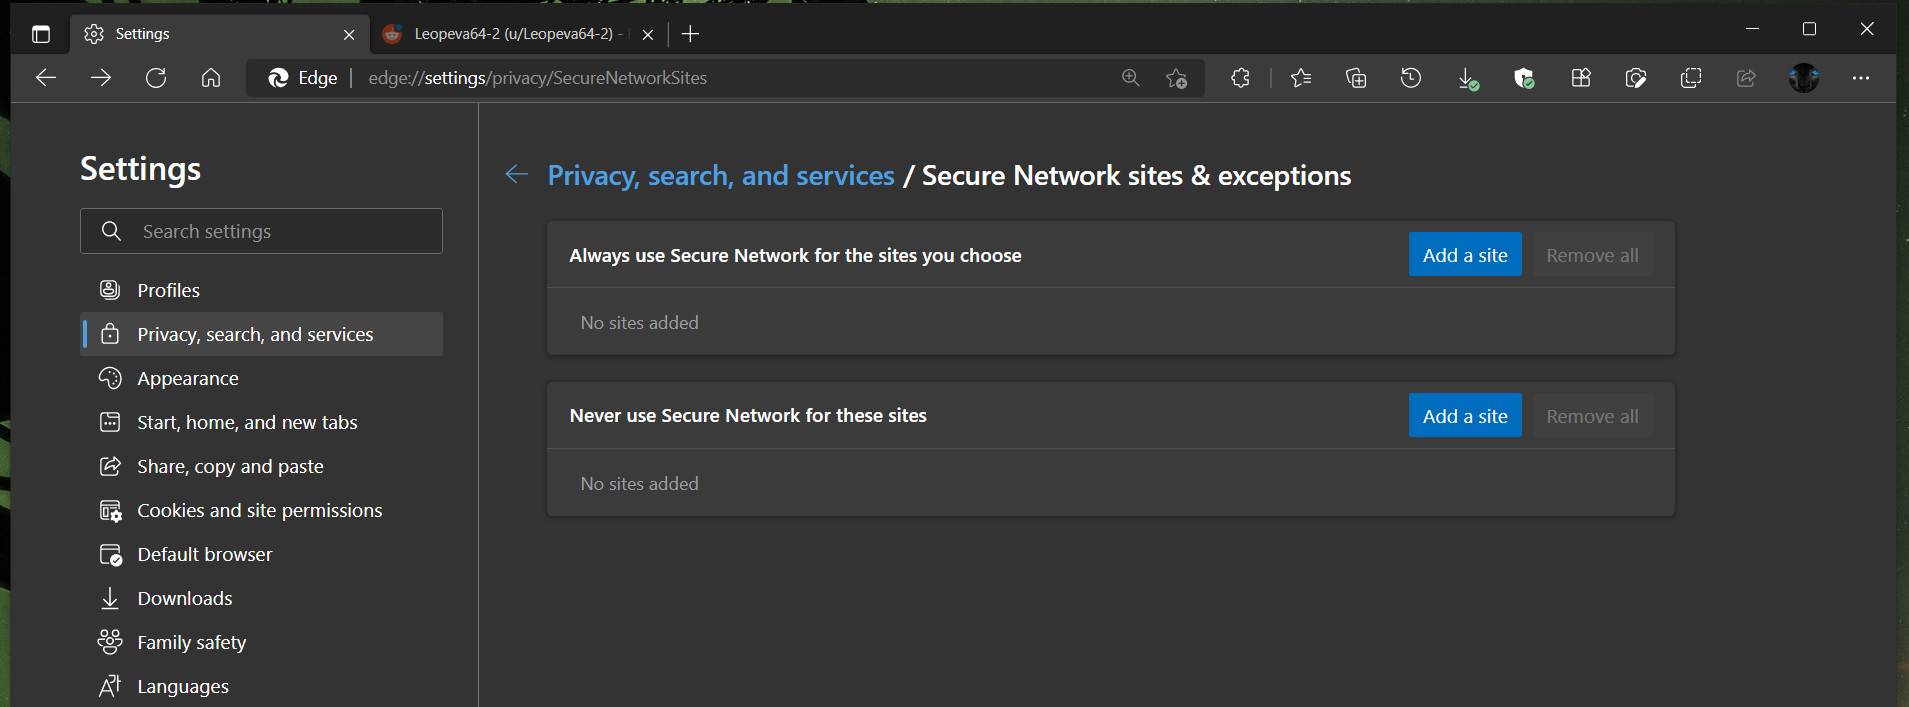 安全网络 (VPN) 设置现已在 Microsoft Edge Canary 中生效